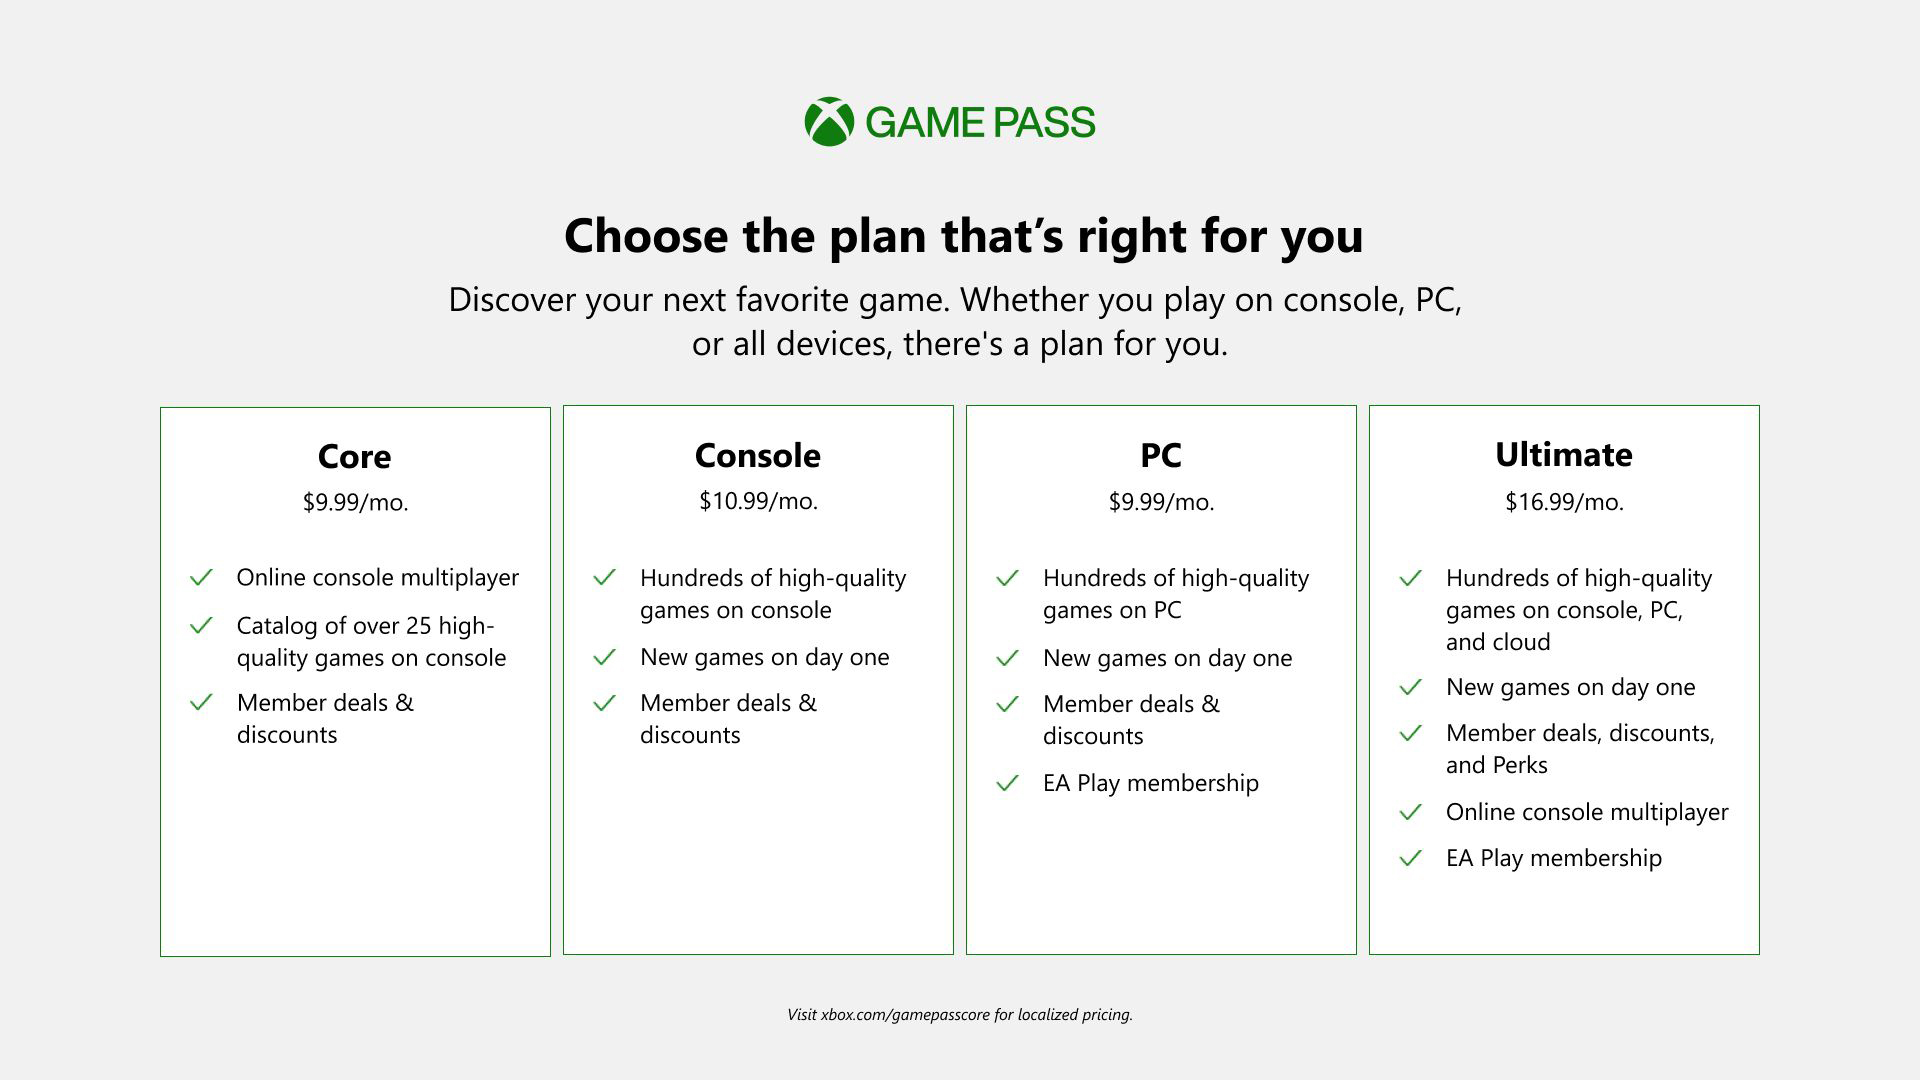 لعبة Xbox Game Pass Core